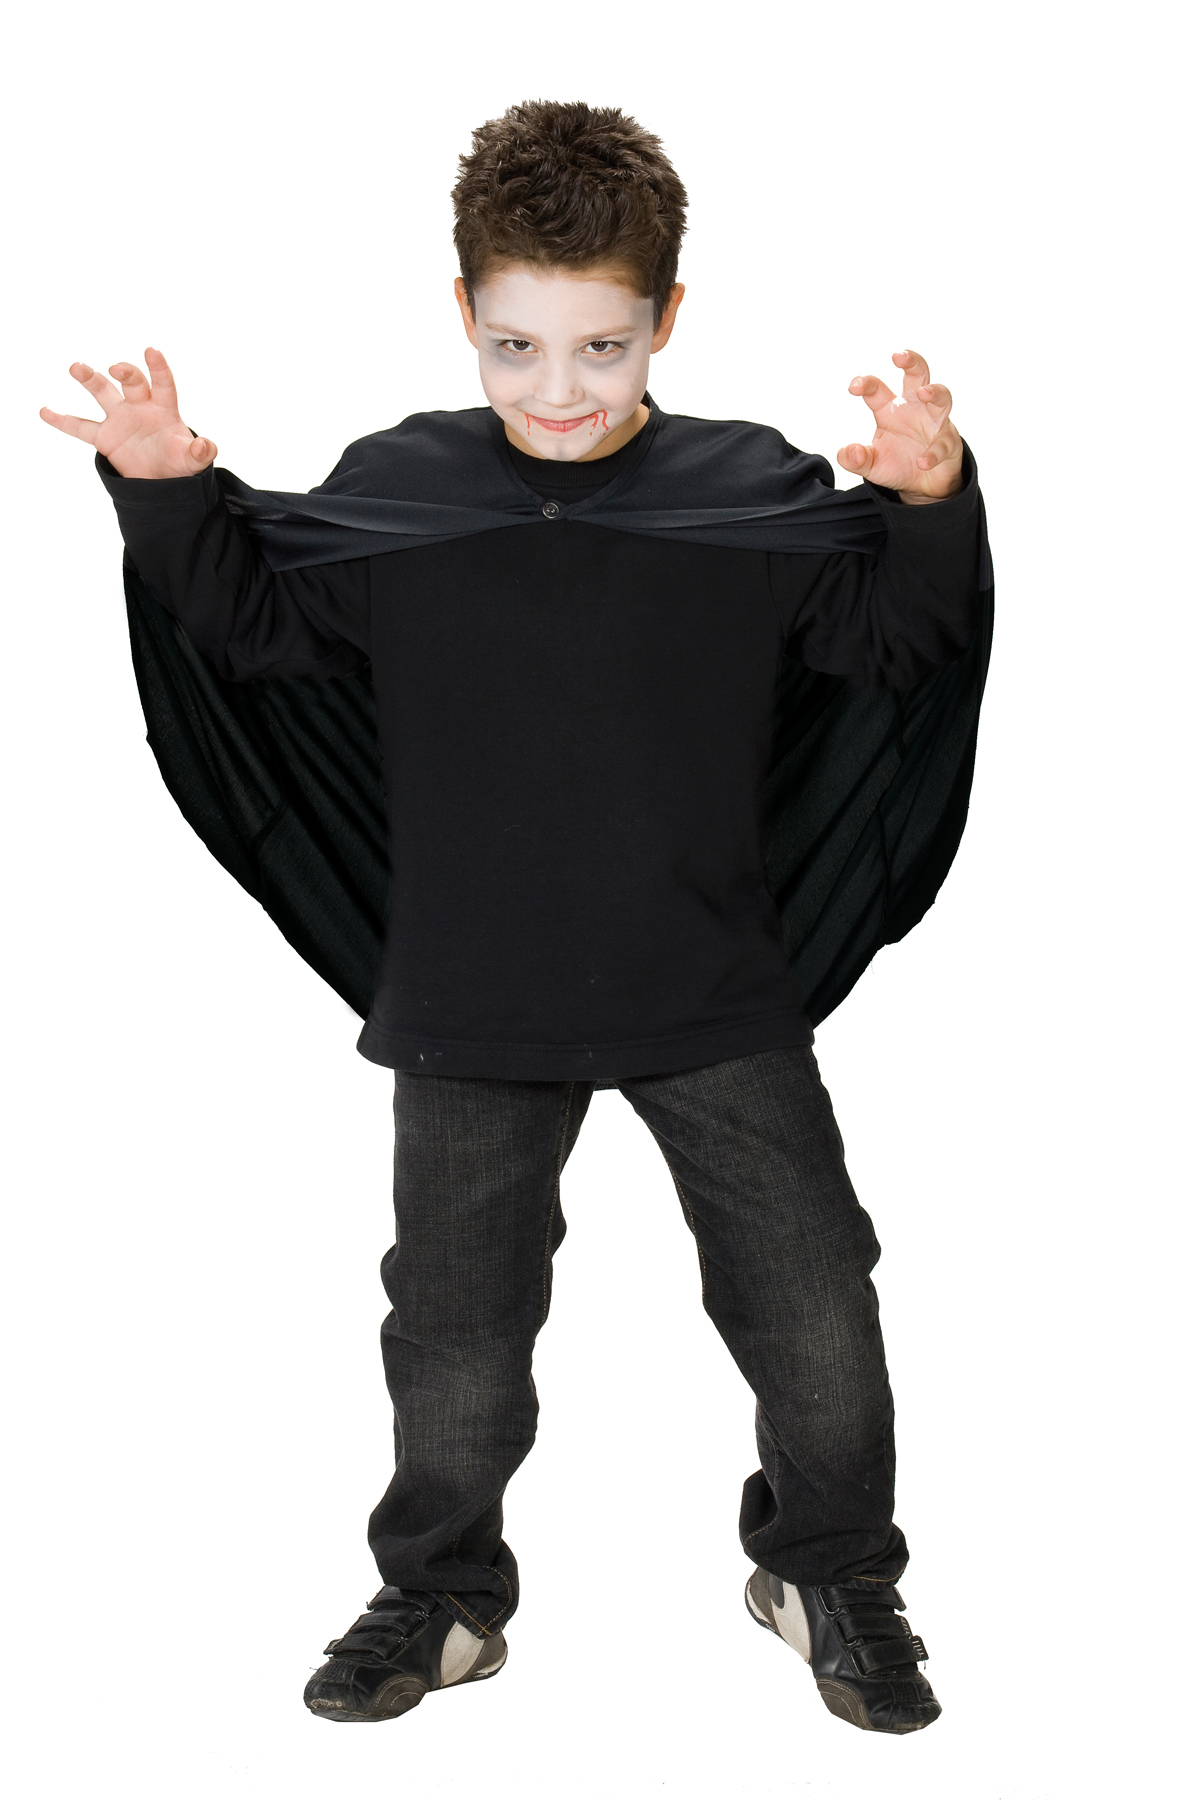 PxP 12626 - Umhang Kinder Kostüm, Gewand, Vampir Cape Gr. 128 - 152